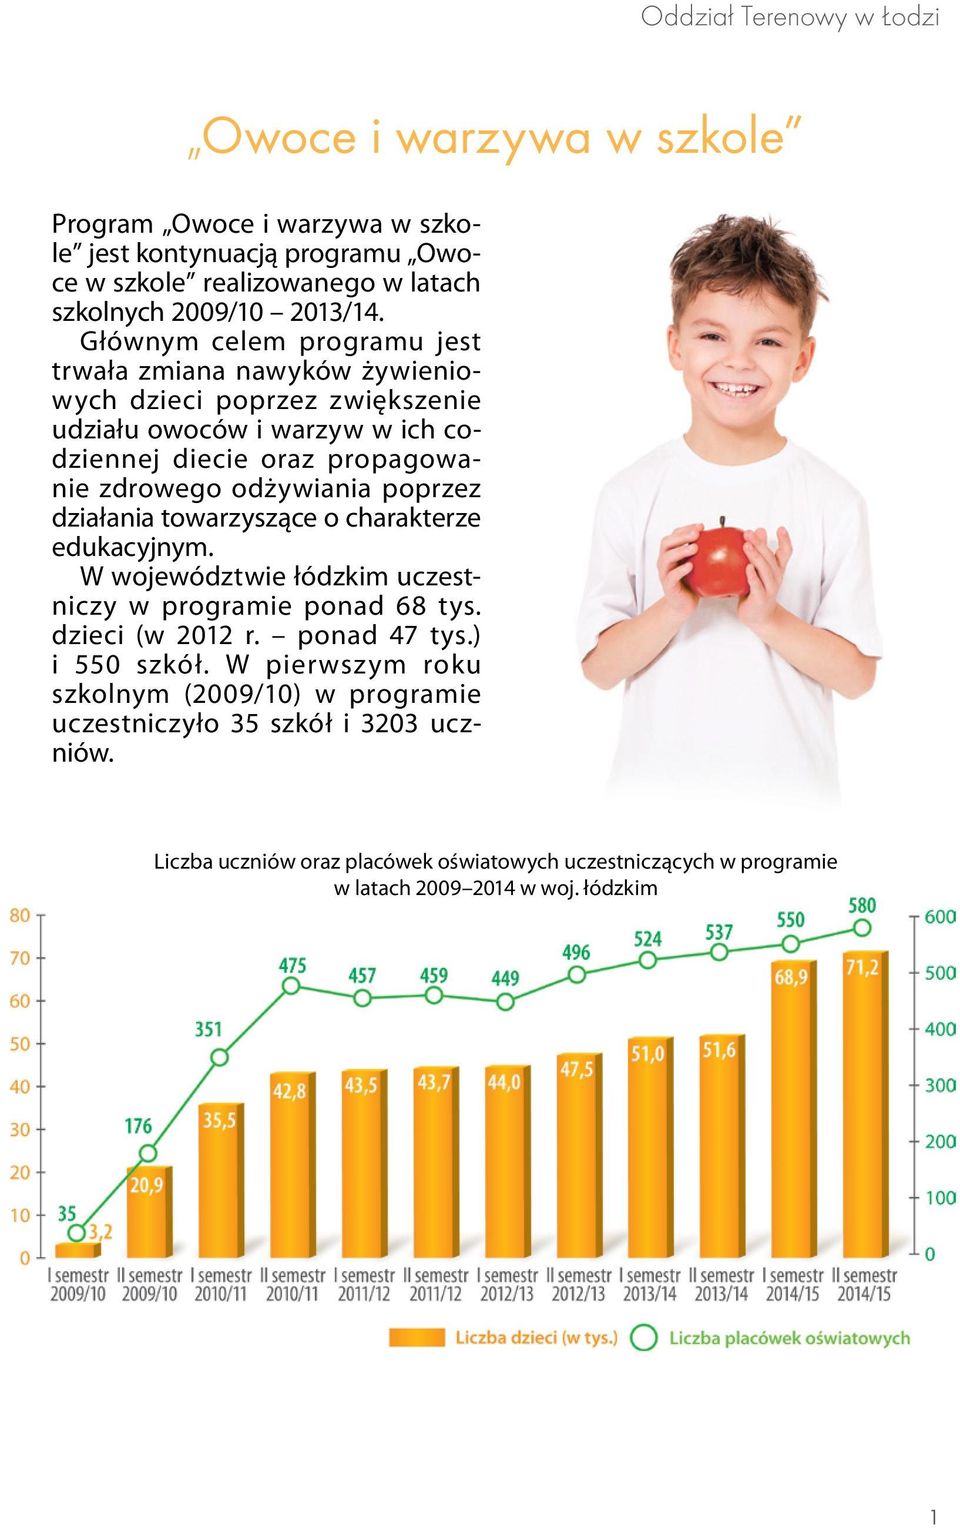 poprzez działania towarzyszące o charakterze edukacyjnym. W województwie łódzkim uczestniczy w programie ponad 68 tys. dzieci (w 2012 r. ponad 47 tys.) i 550 szkół.